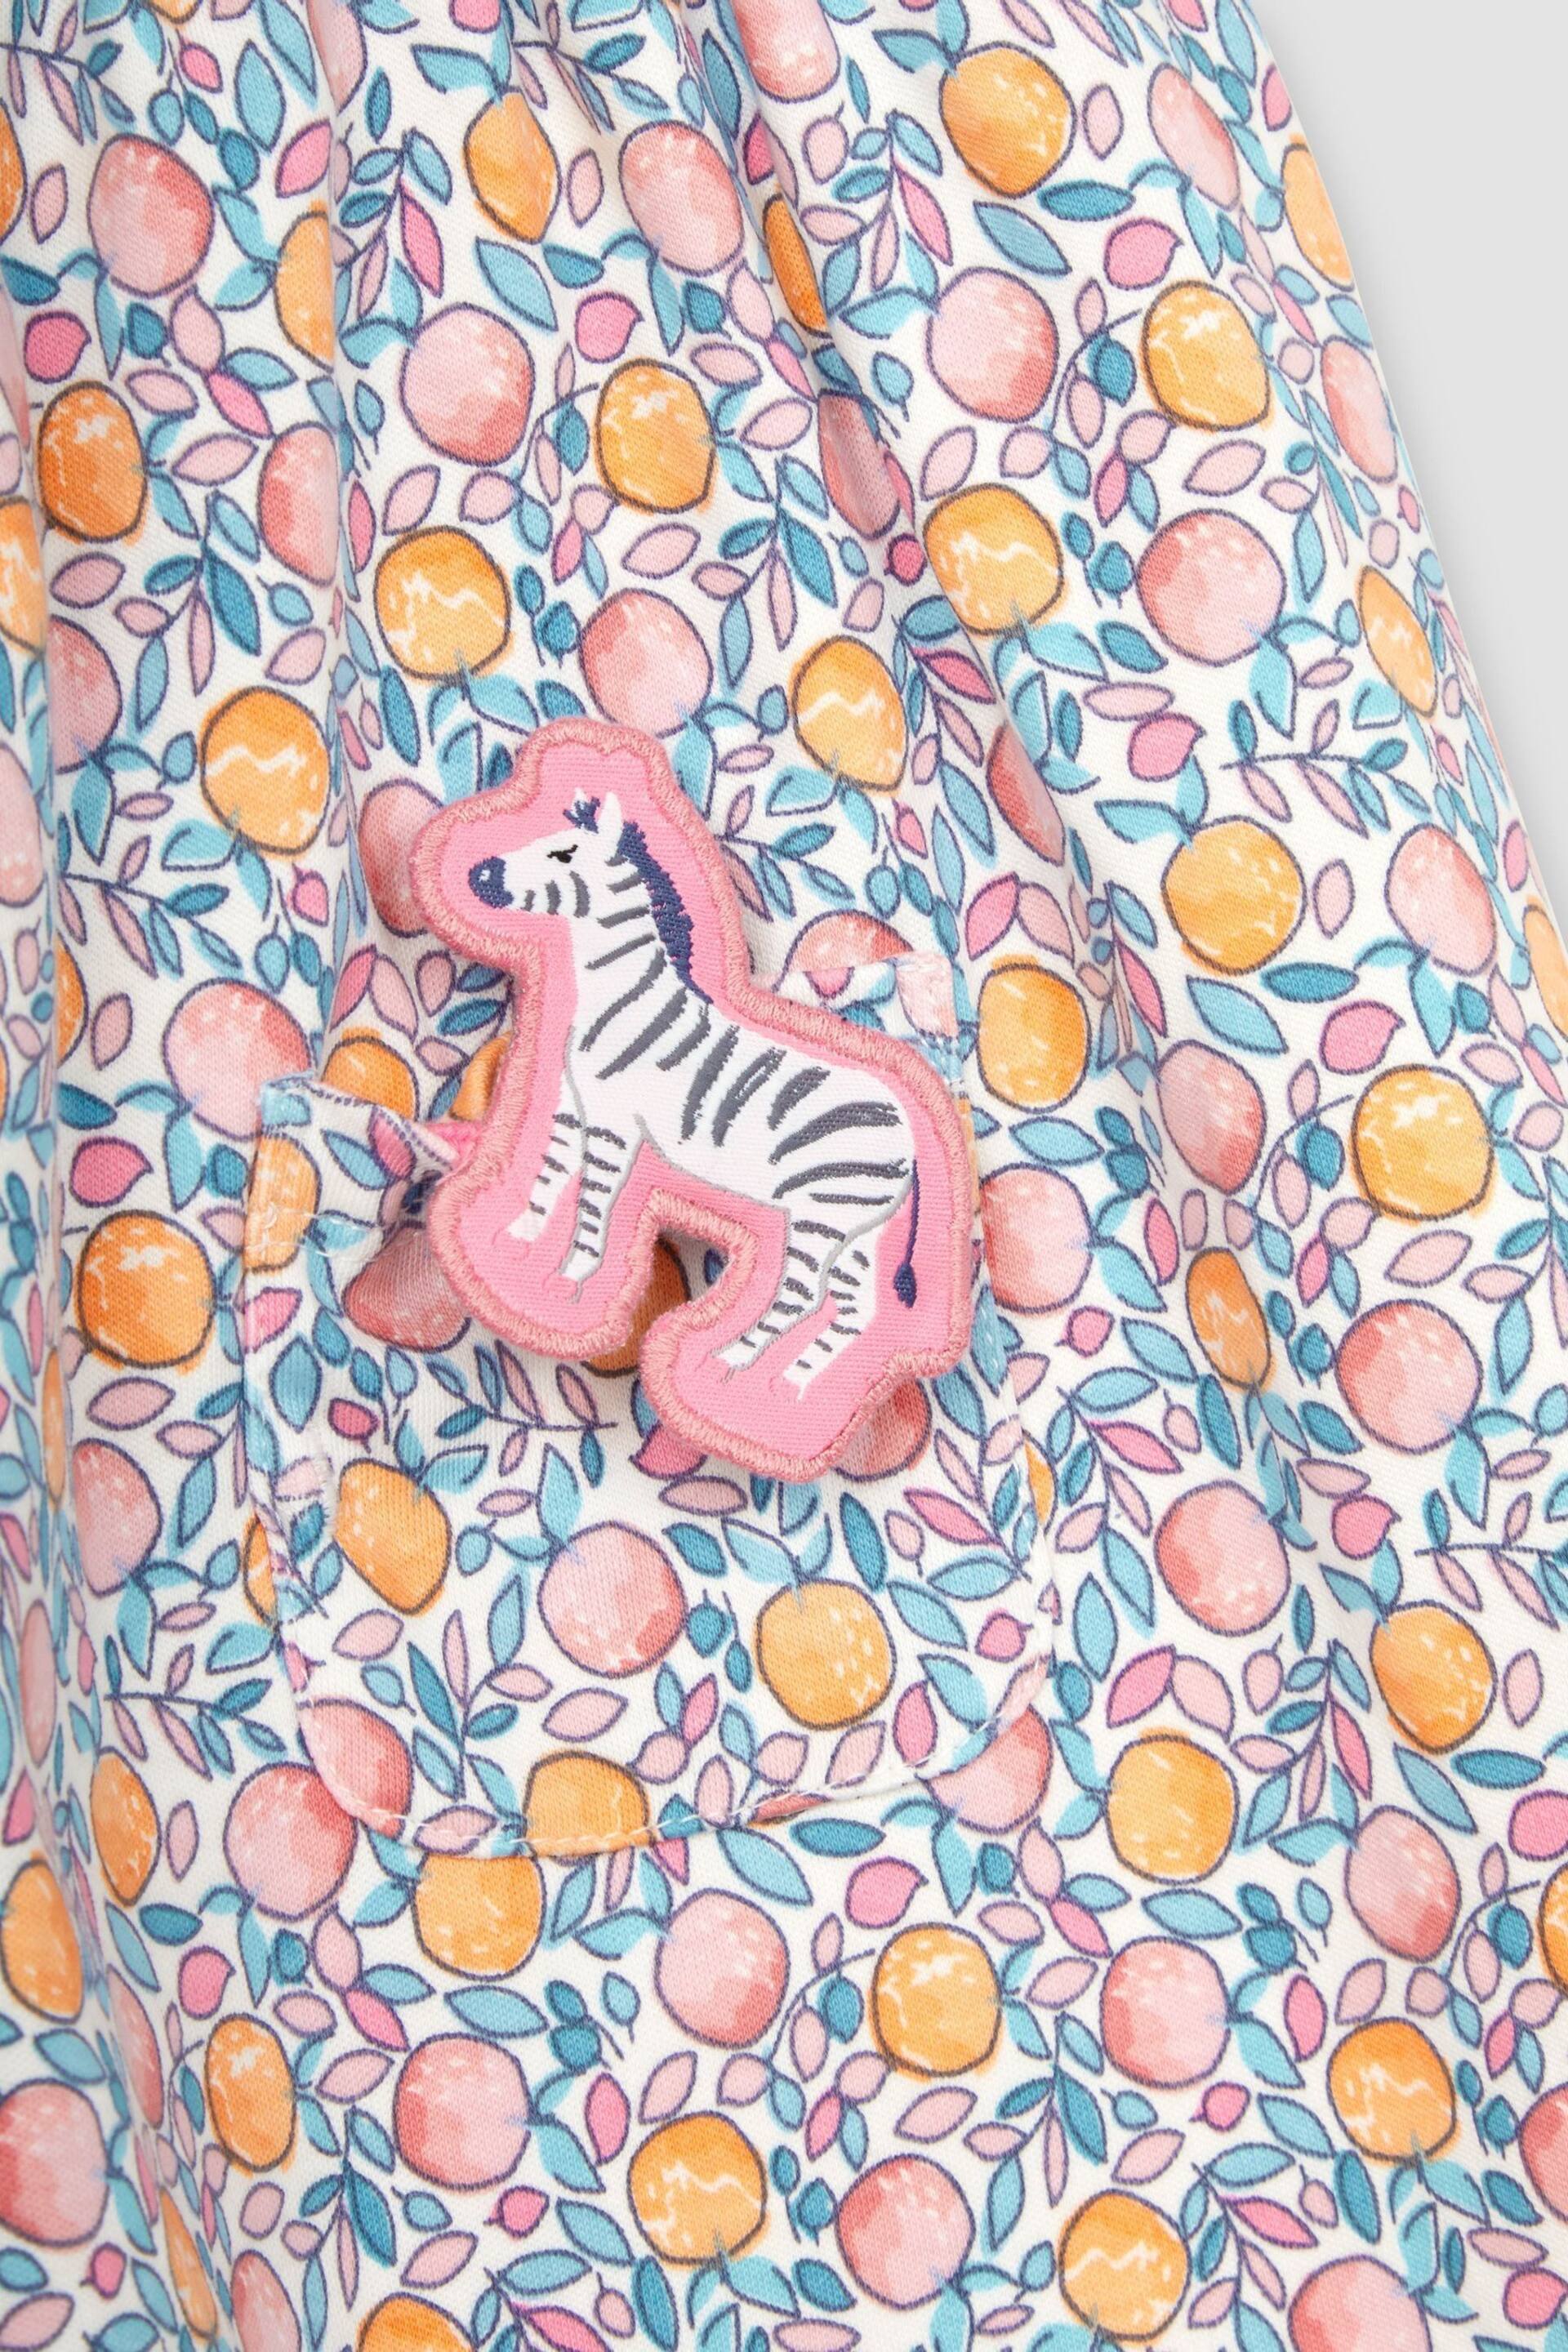 JoJo Maman Bébé Pink Apple & Peach Floral Peter Pan Pet In Pocket Jersey Dress - Image 4 of 4